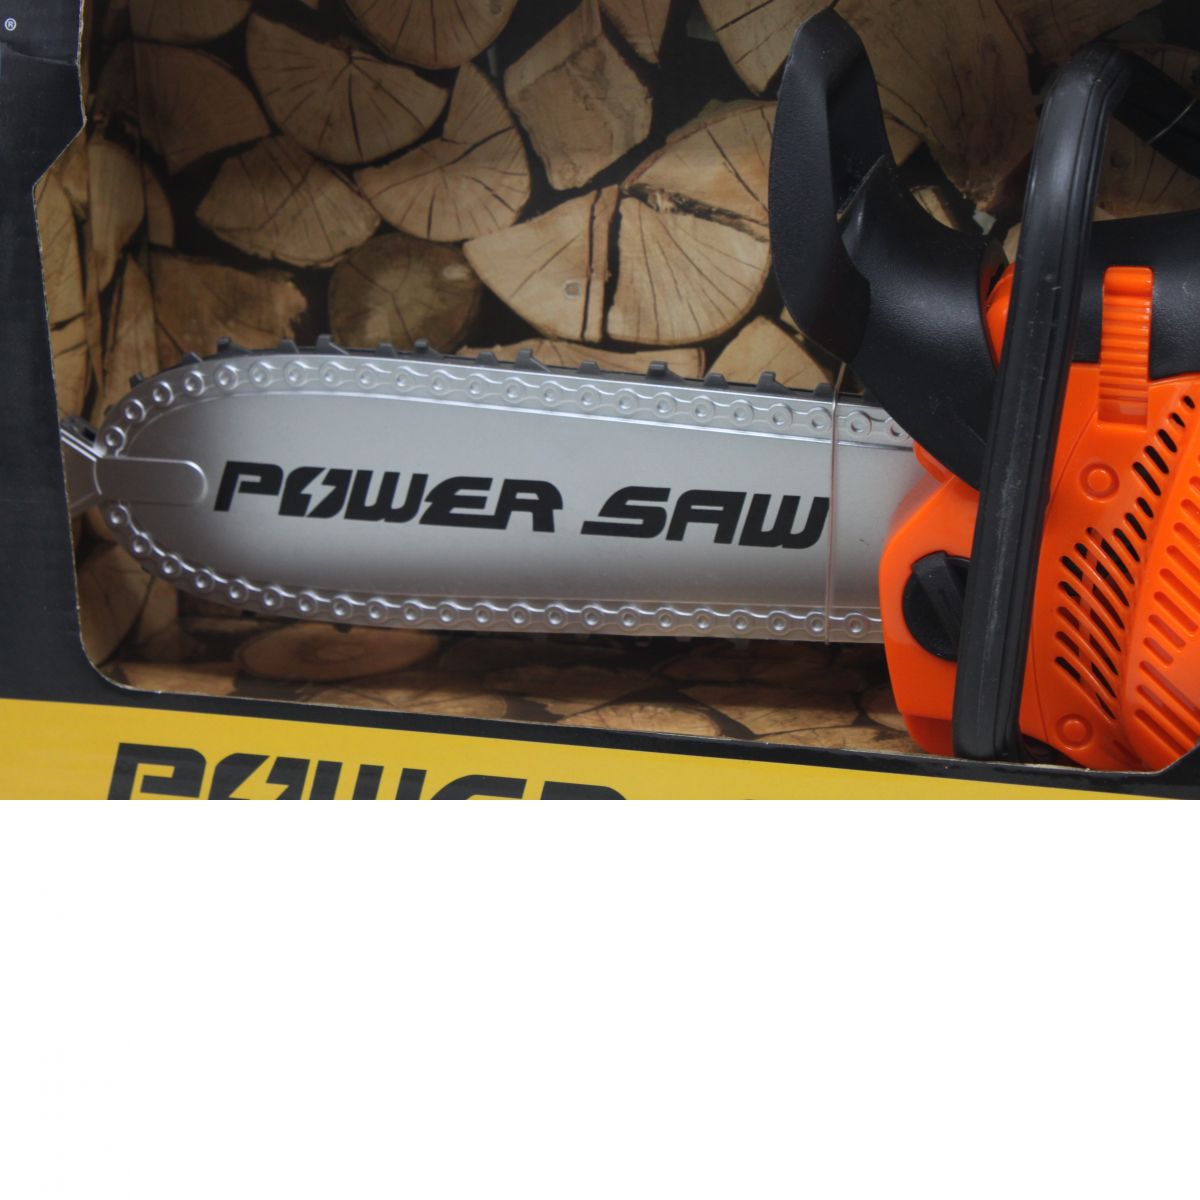 Бензопила на батарейках "Power Saw" (оранжевая)